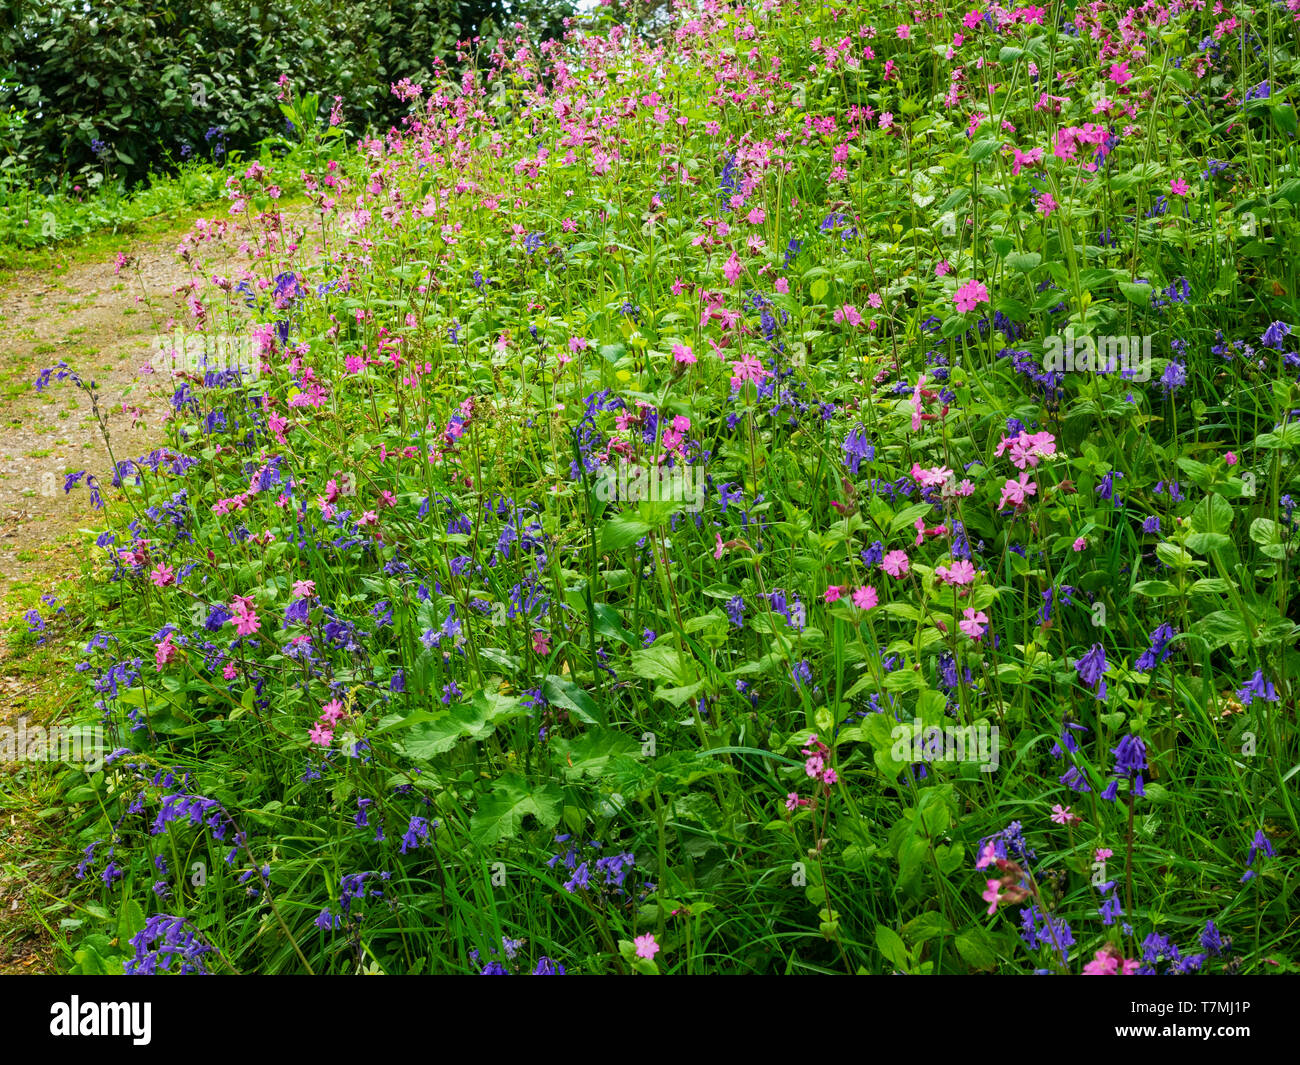 Primavera de flores silvestres, principalmente las campánulas azules, Hyacinthus no scriptus y rojo campion, Silene dioica, en un bosque de Devon bank Foto de stock